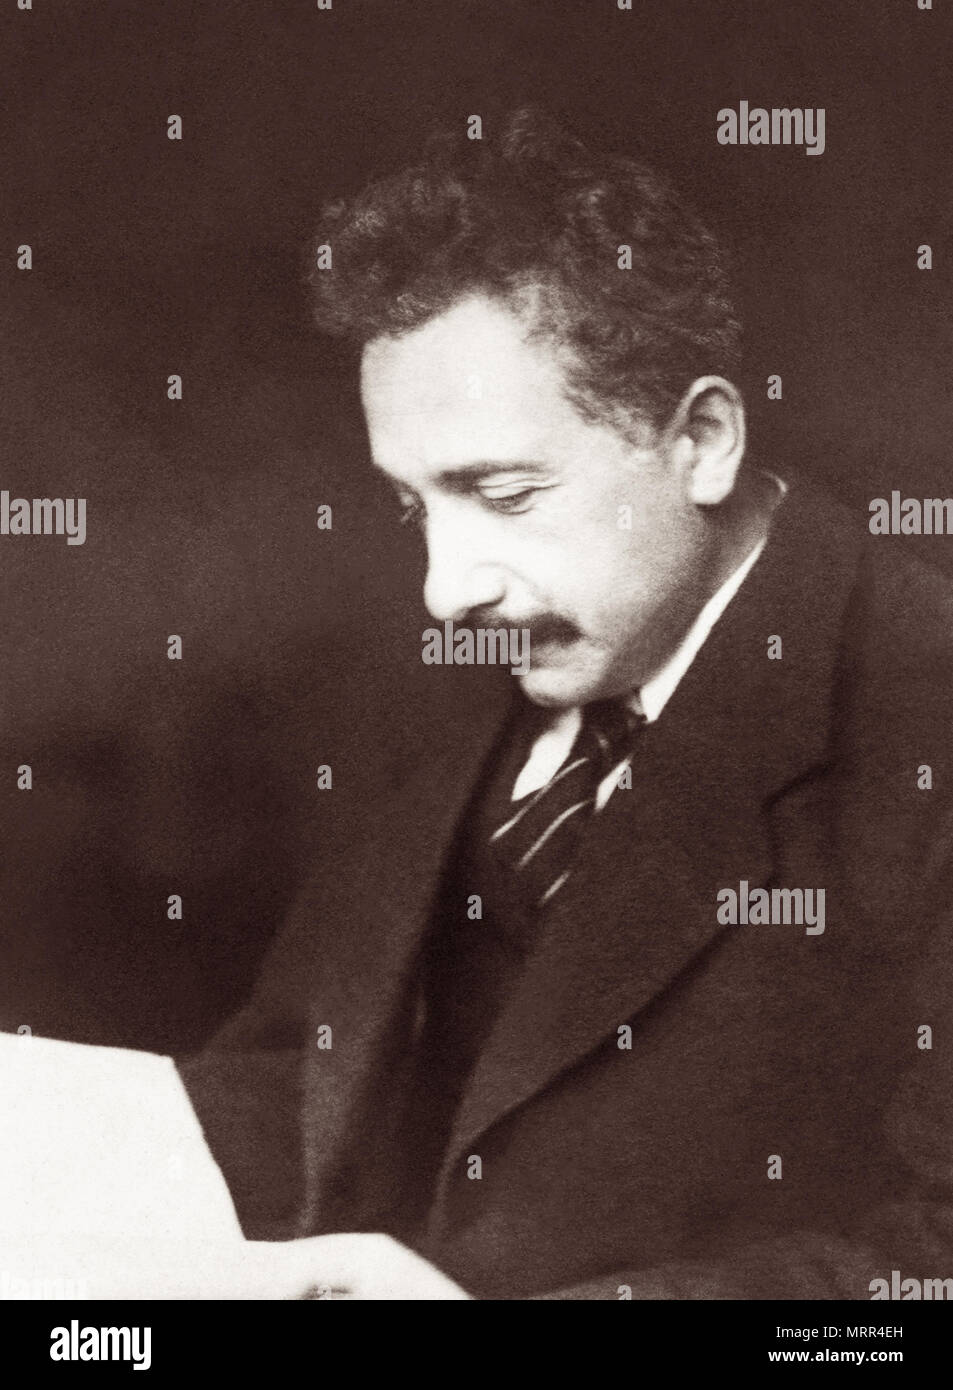 Albert Einstein (1879-1955) était un physicien théorique qui a remporté le Prix Nobel de physique 1921 et a développé la théorie de la relativité. Banque D'Images